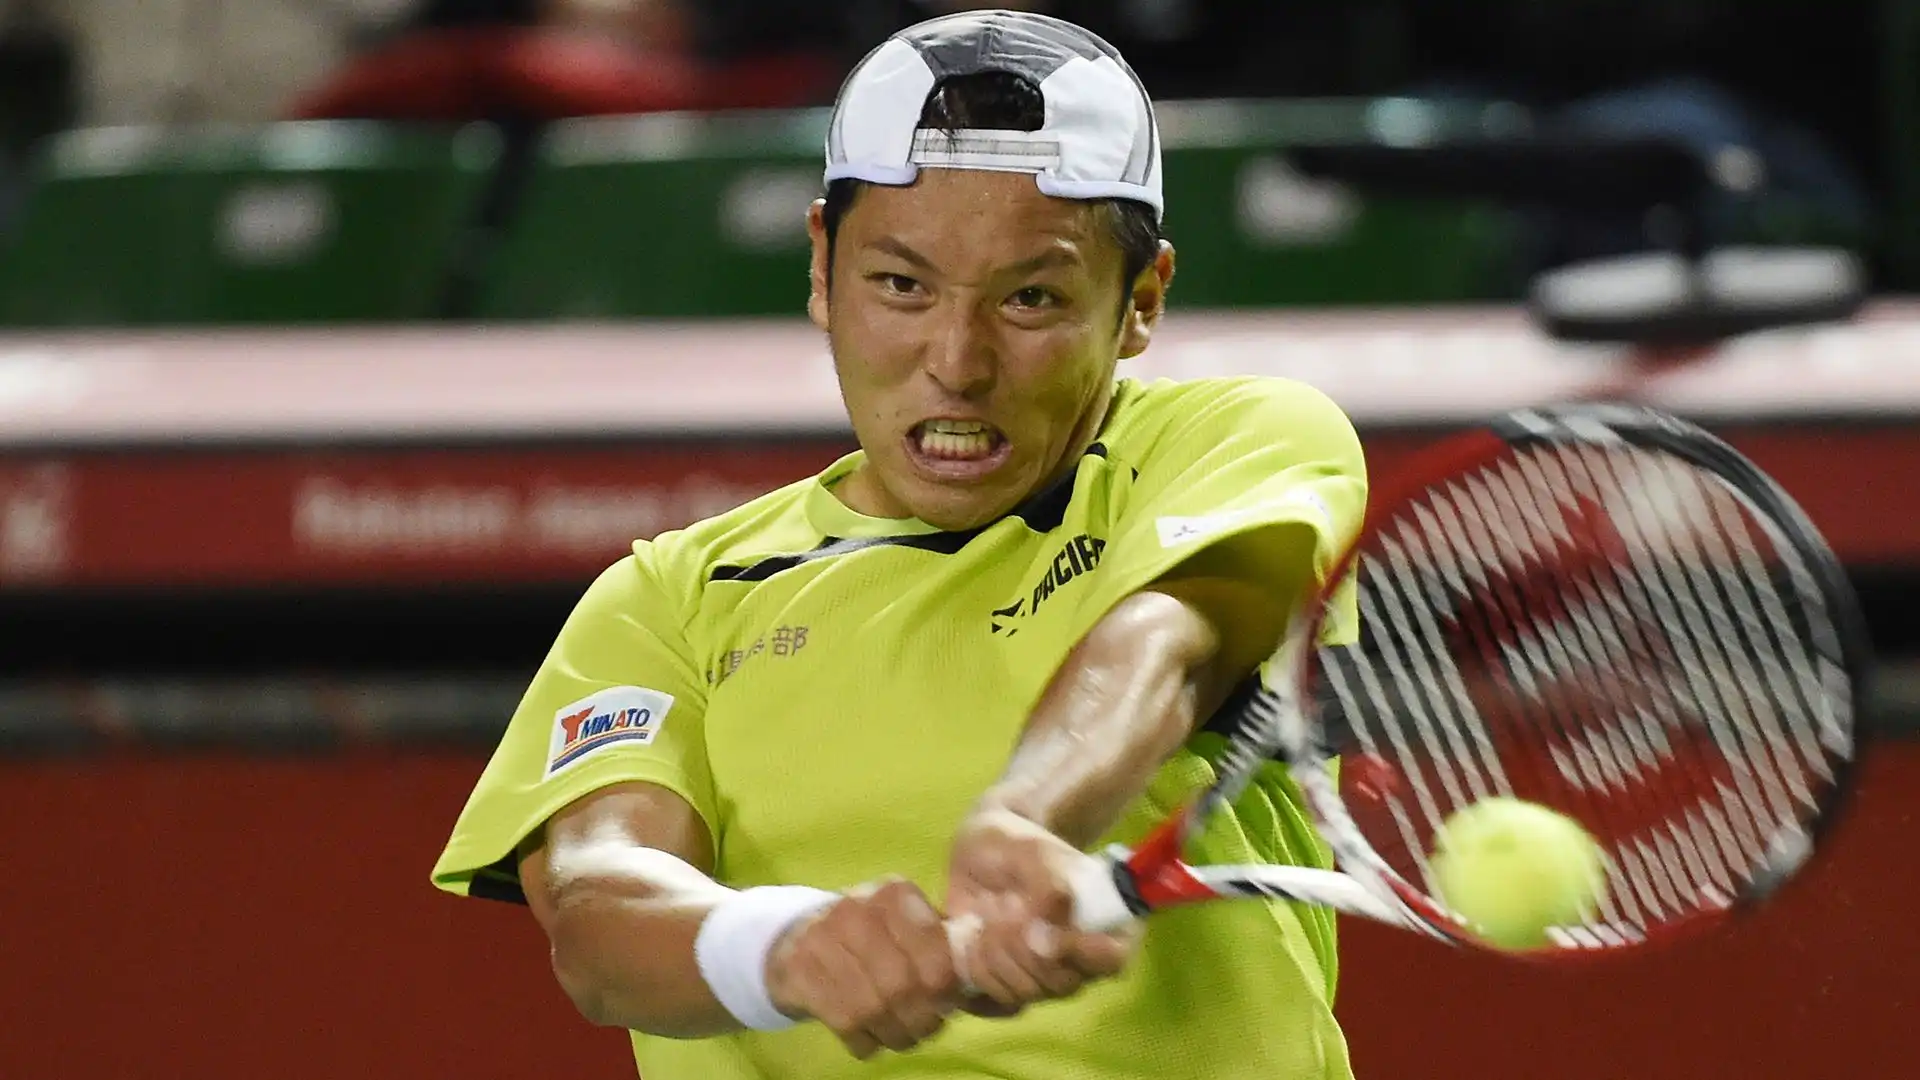 10) Tatsuma Ito: 1,7 milioni di dollari guadagnati in carriera. Ha vinto quattro incontri di Coppa Davis